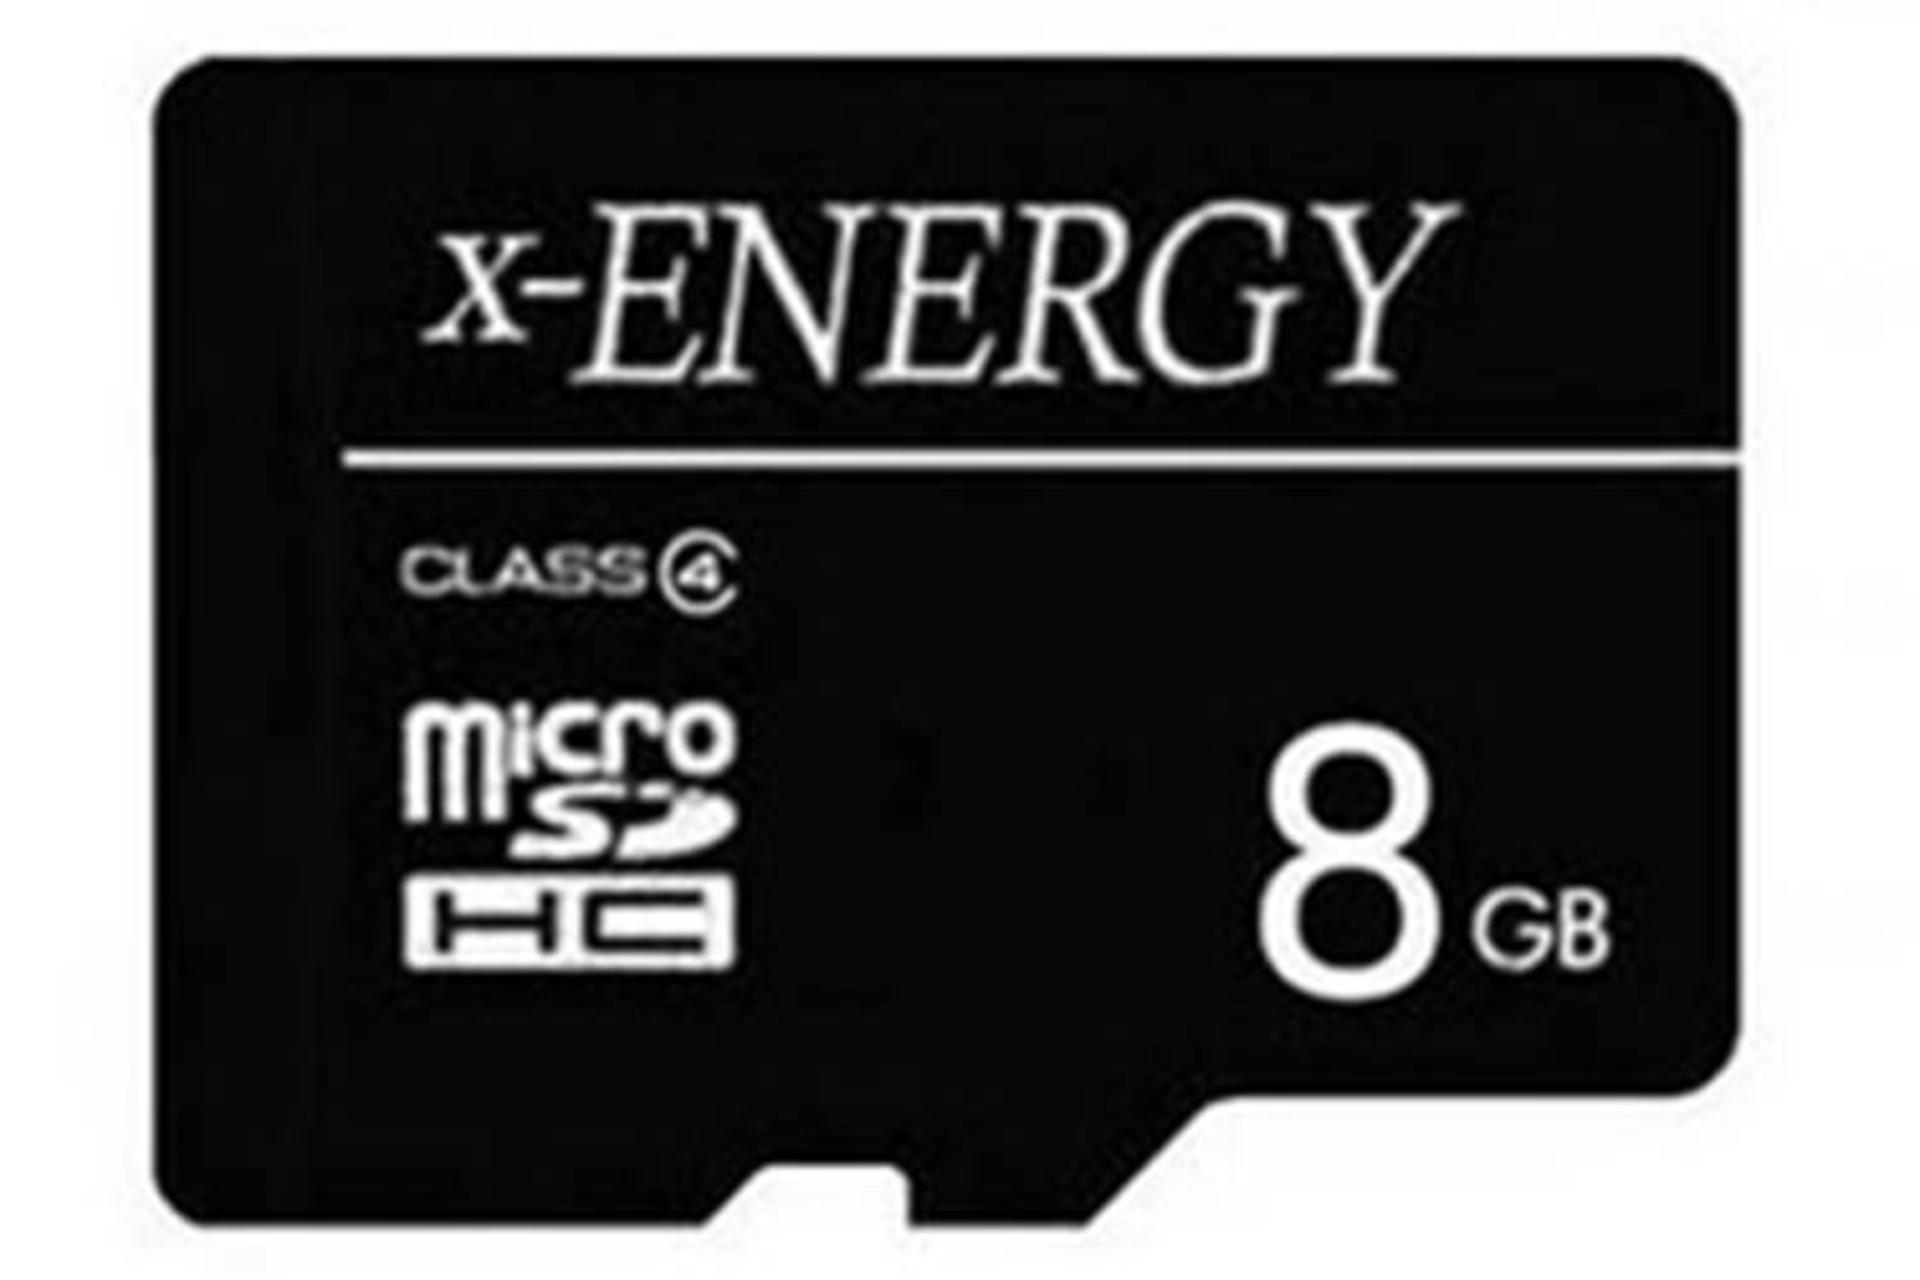 مرجع متخصصين ايران x-Energy microSDHC Class 4 8GB